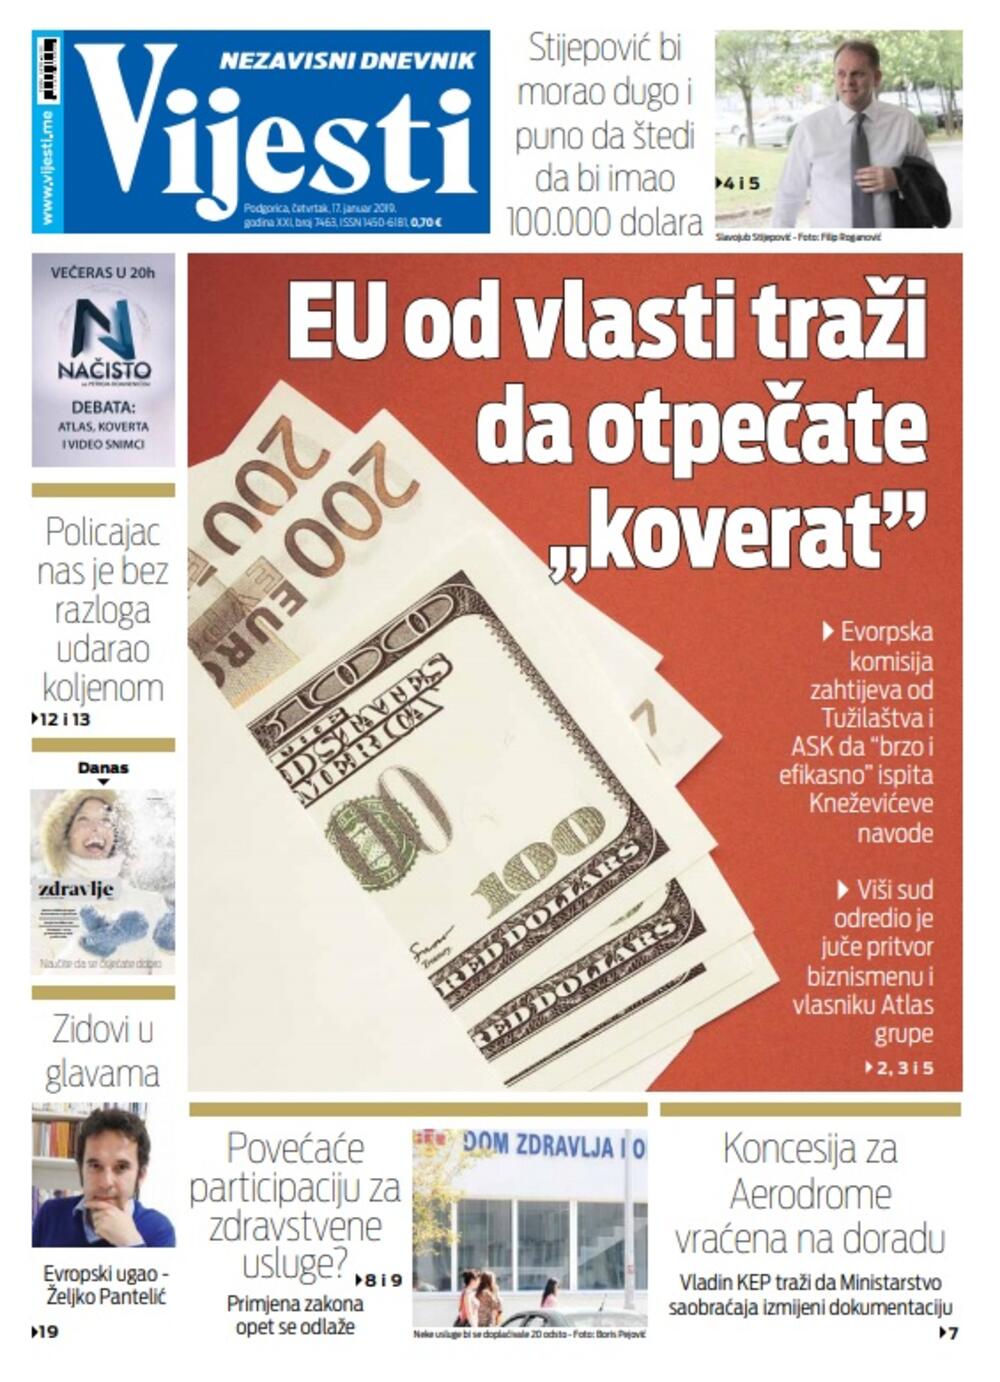 Naslovna strana "Vijesti" 17.1.2019., Foto: Vijesti